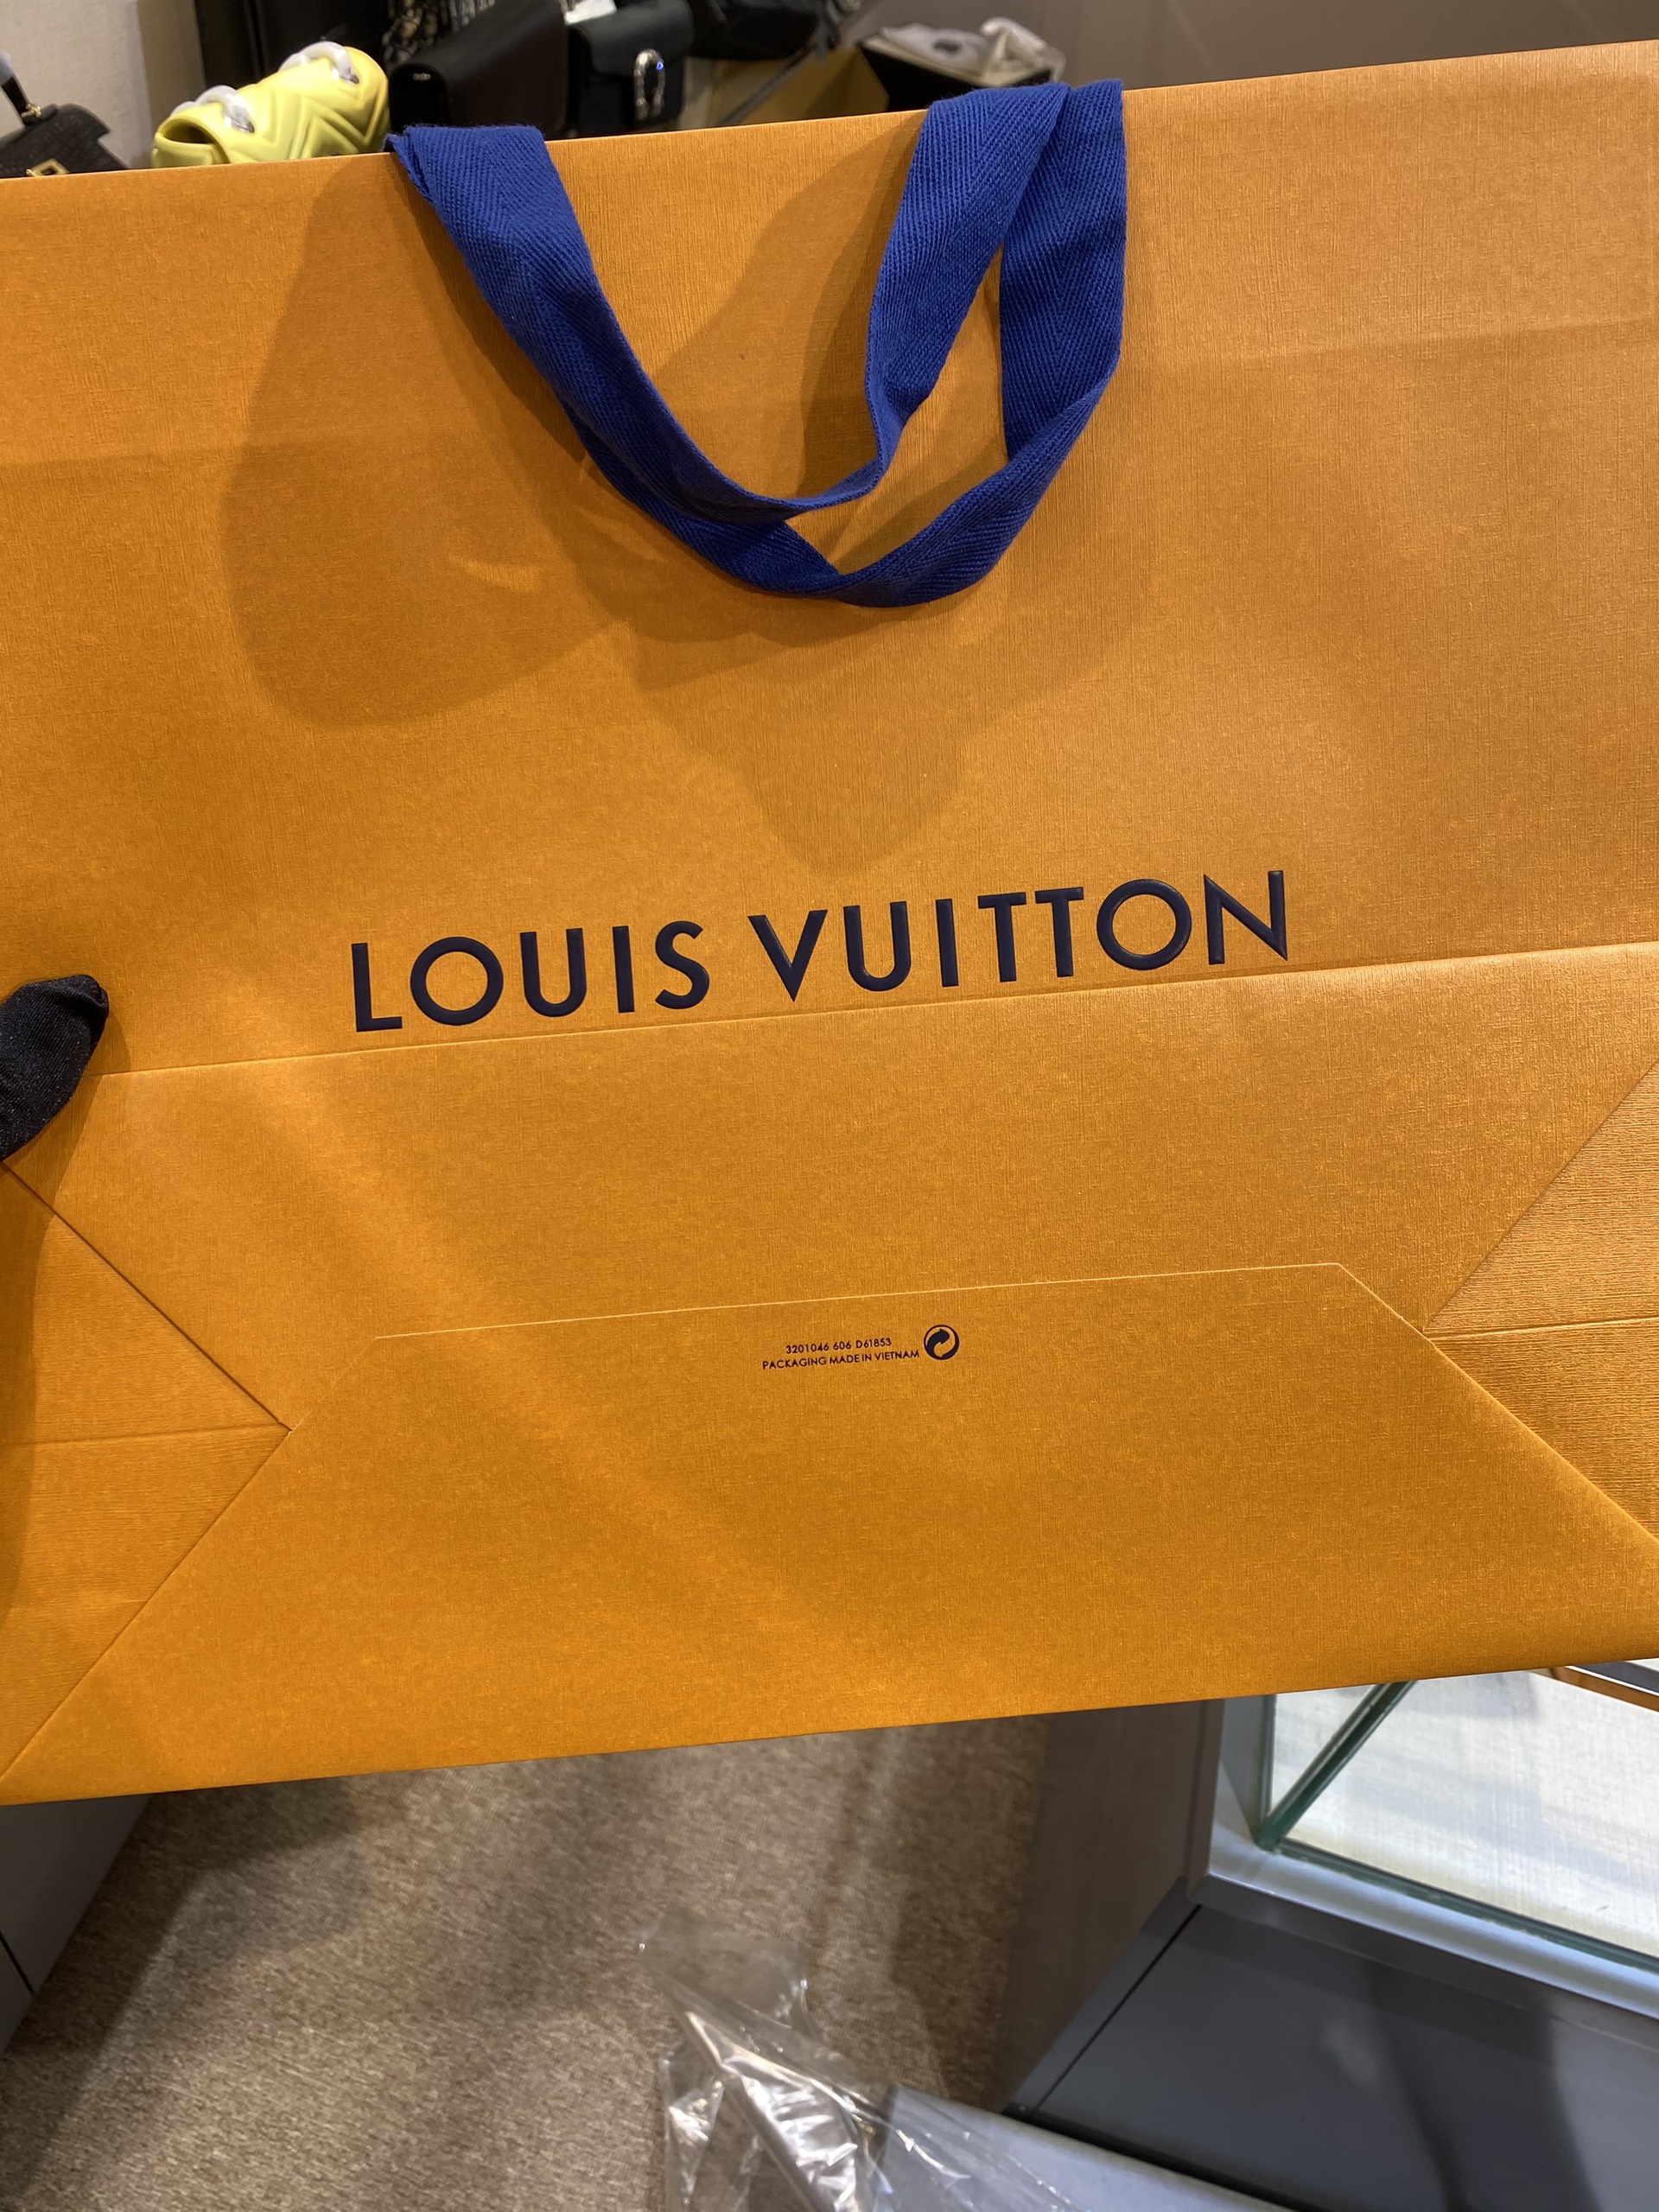 Louis Vuitton thay đổi bao bì sau 13 năm  Harpers Bazaar Việt Nam